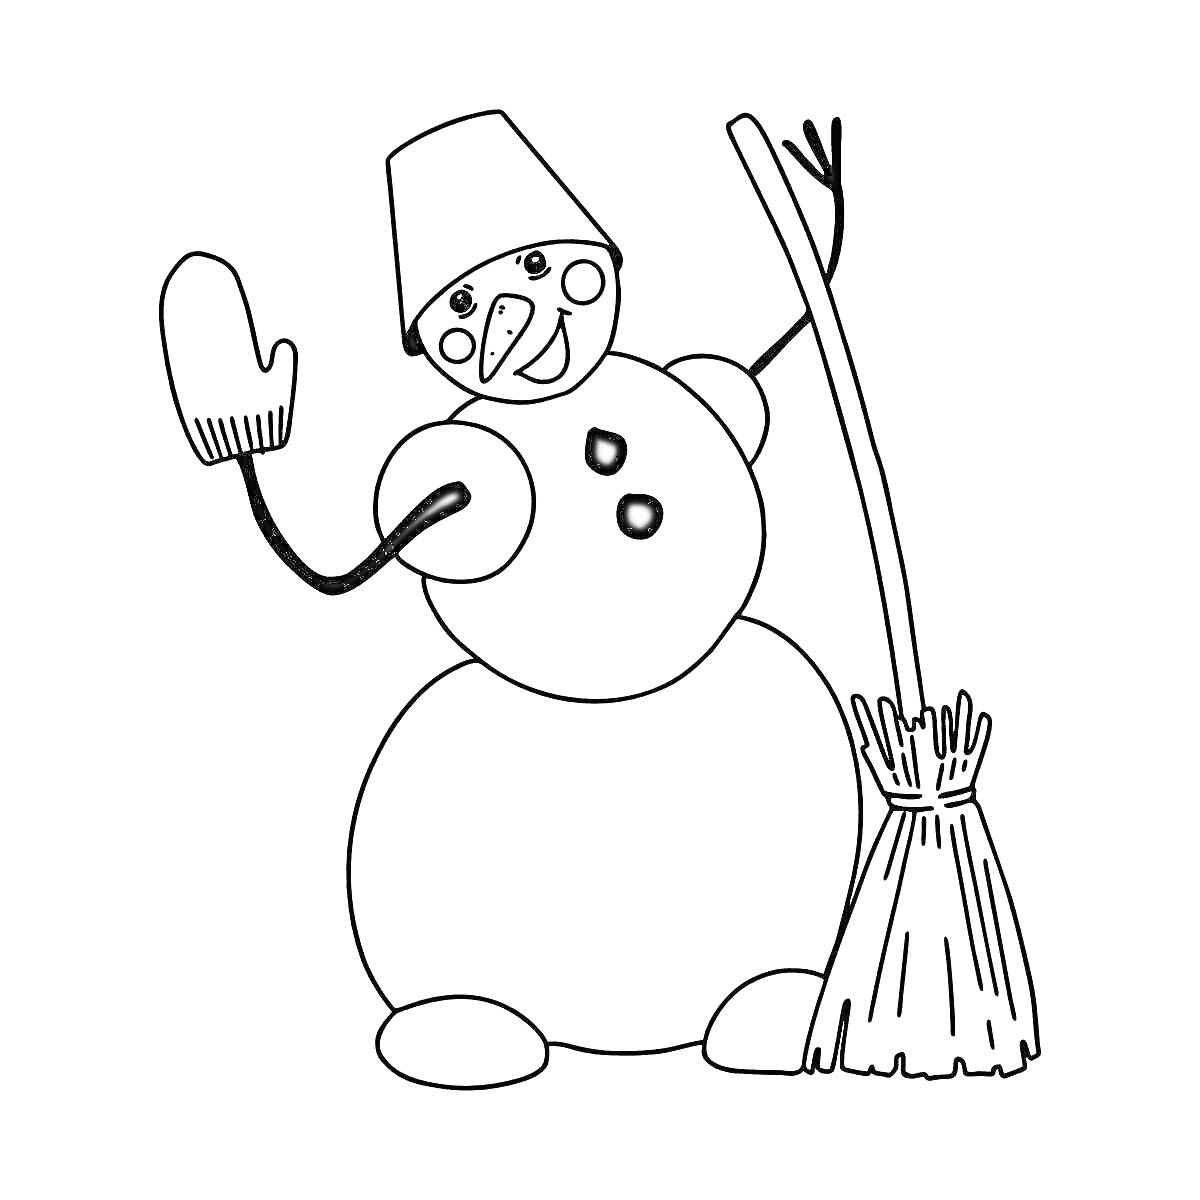 Раскраска Снеговик в ведре с метлой и варежкой